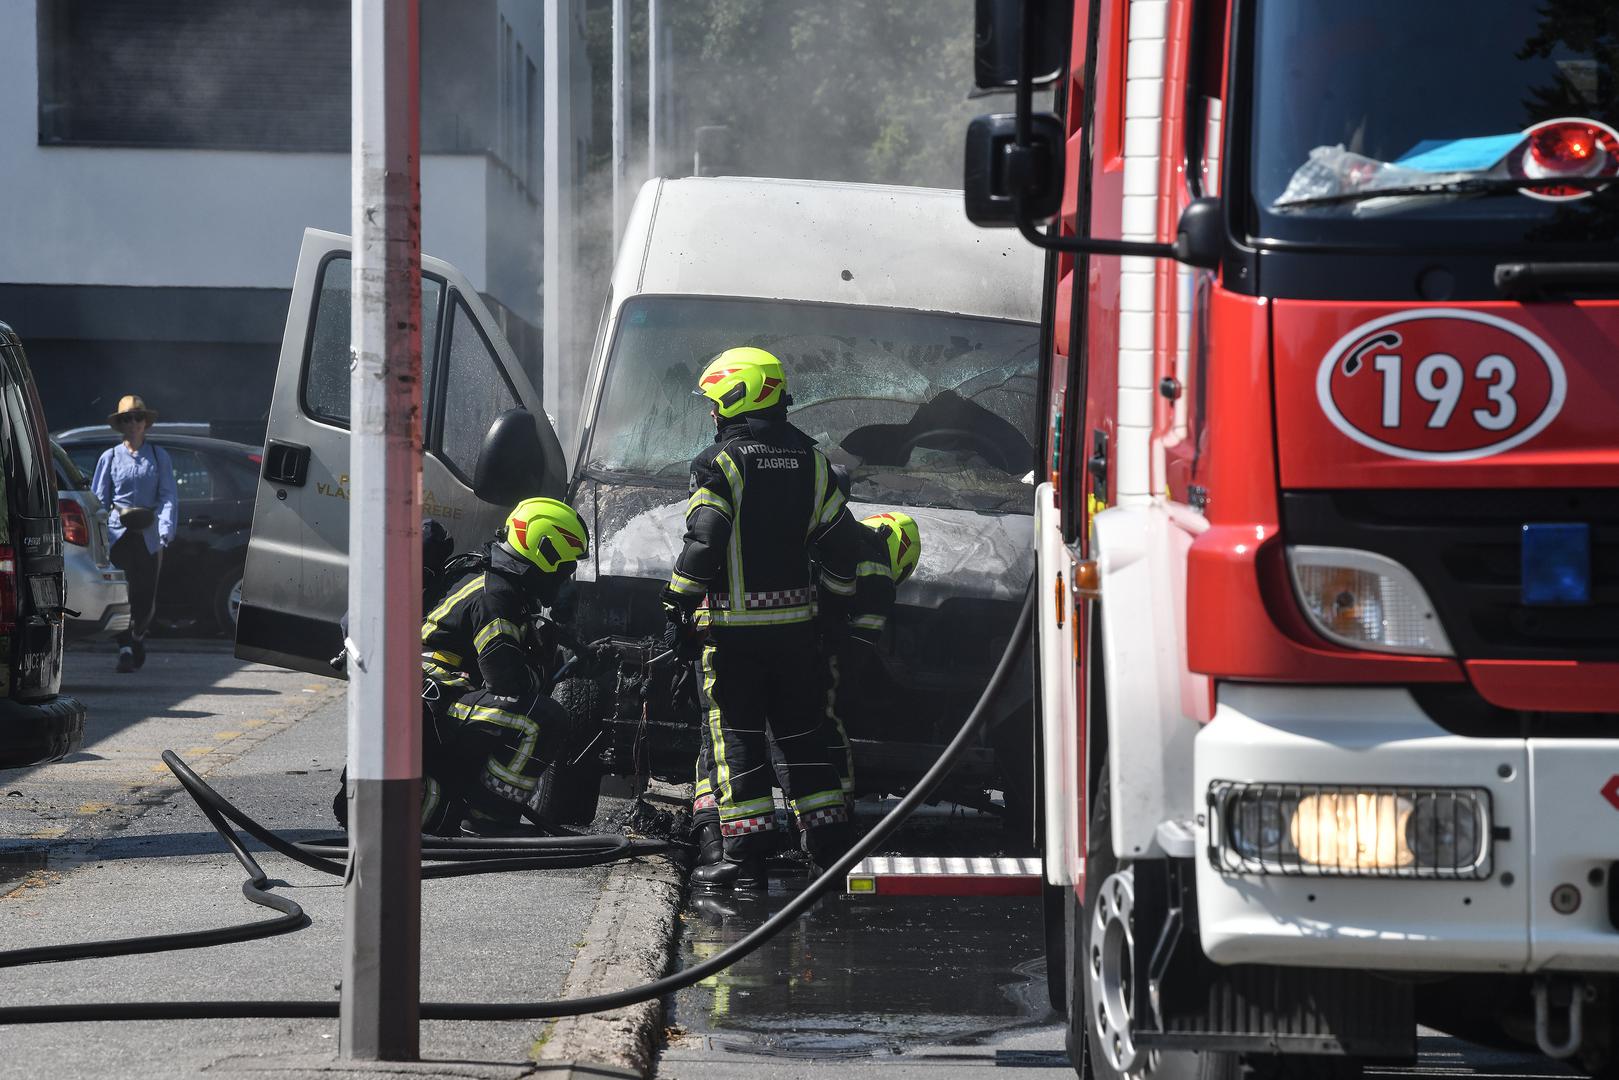 Vozilo kombija eksplodiralo je u srijedu u zagrebačkoj Hondlovoj ulici. Nitko, srećom, nije ozlijeđen u eksploziji. Vatrogasci su brzo reagirali te je vatra brzo ugašena